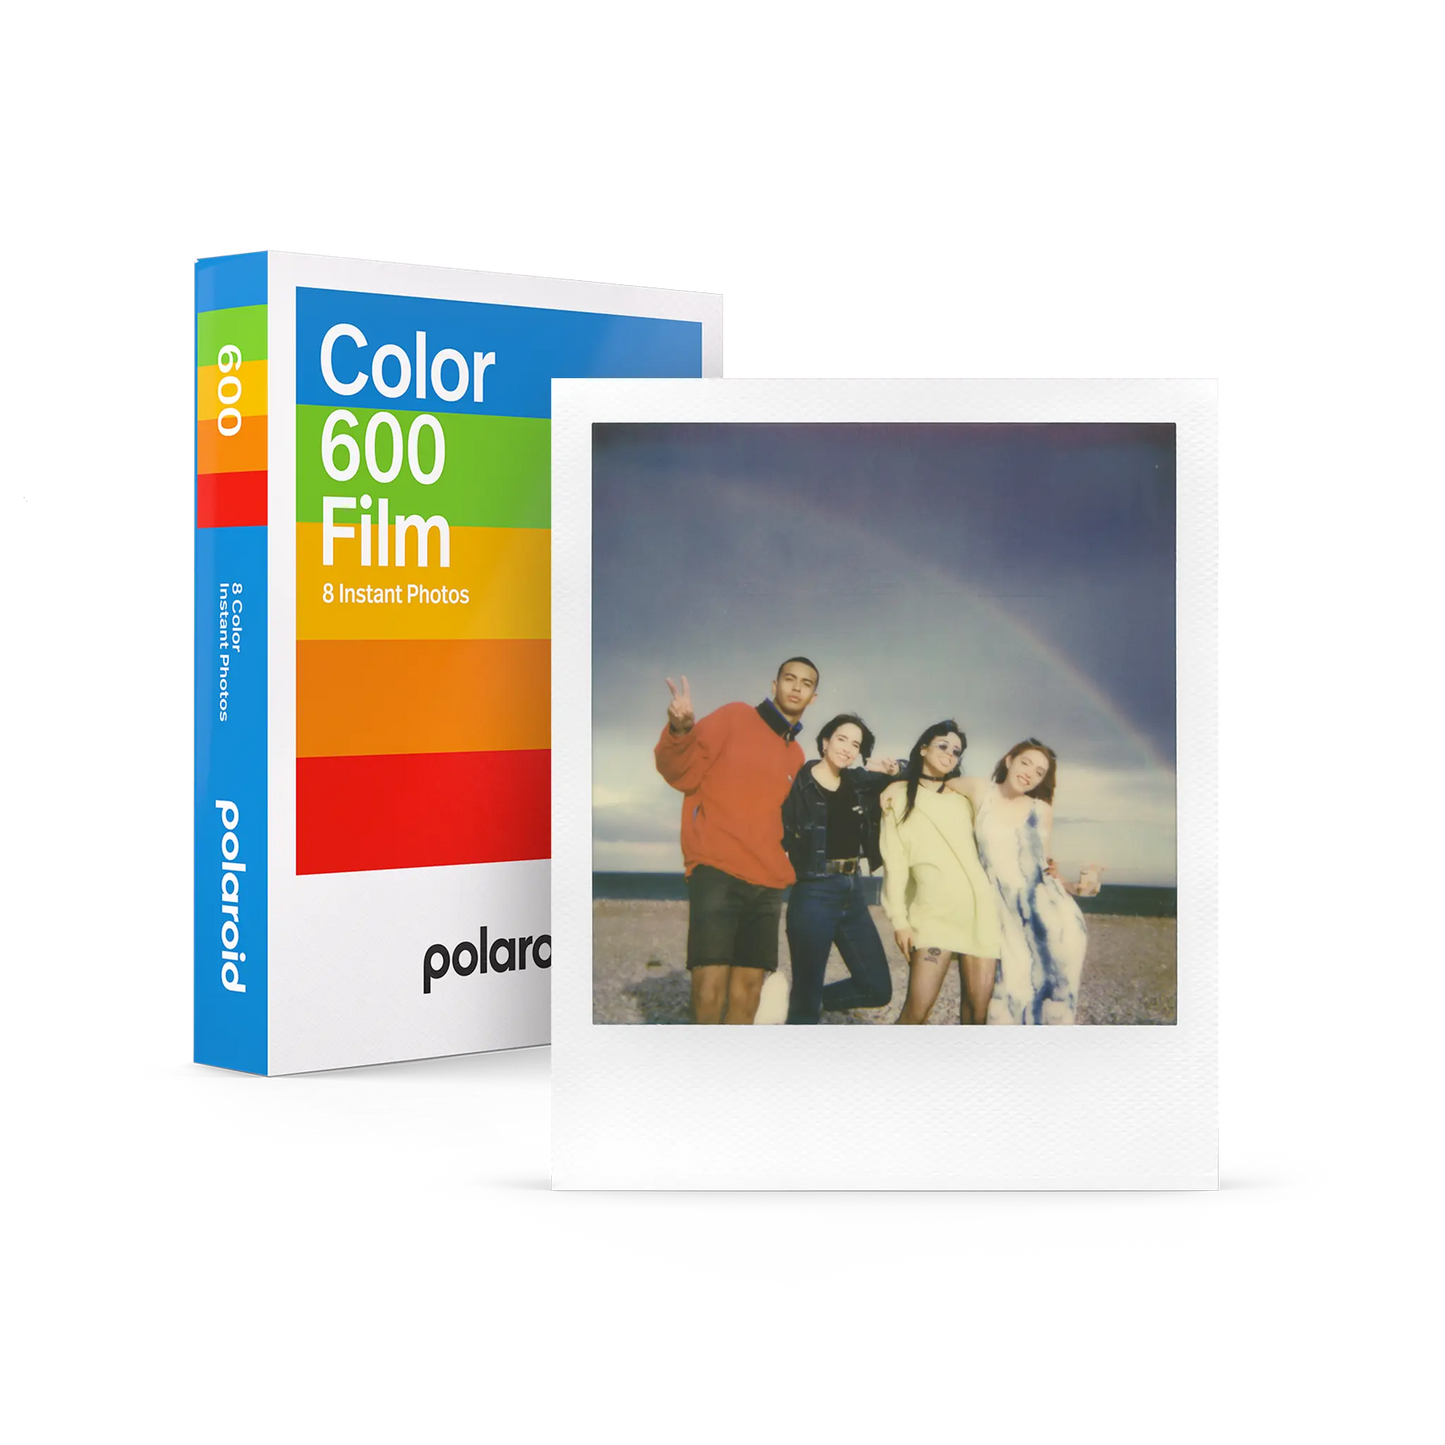 Polaroid Originals 600 Film